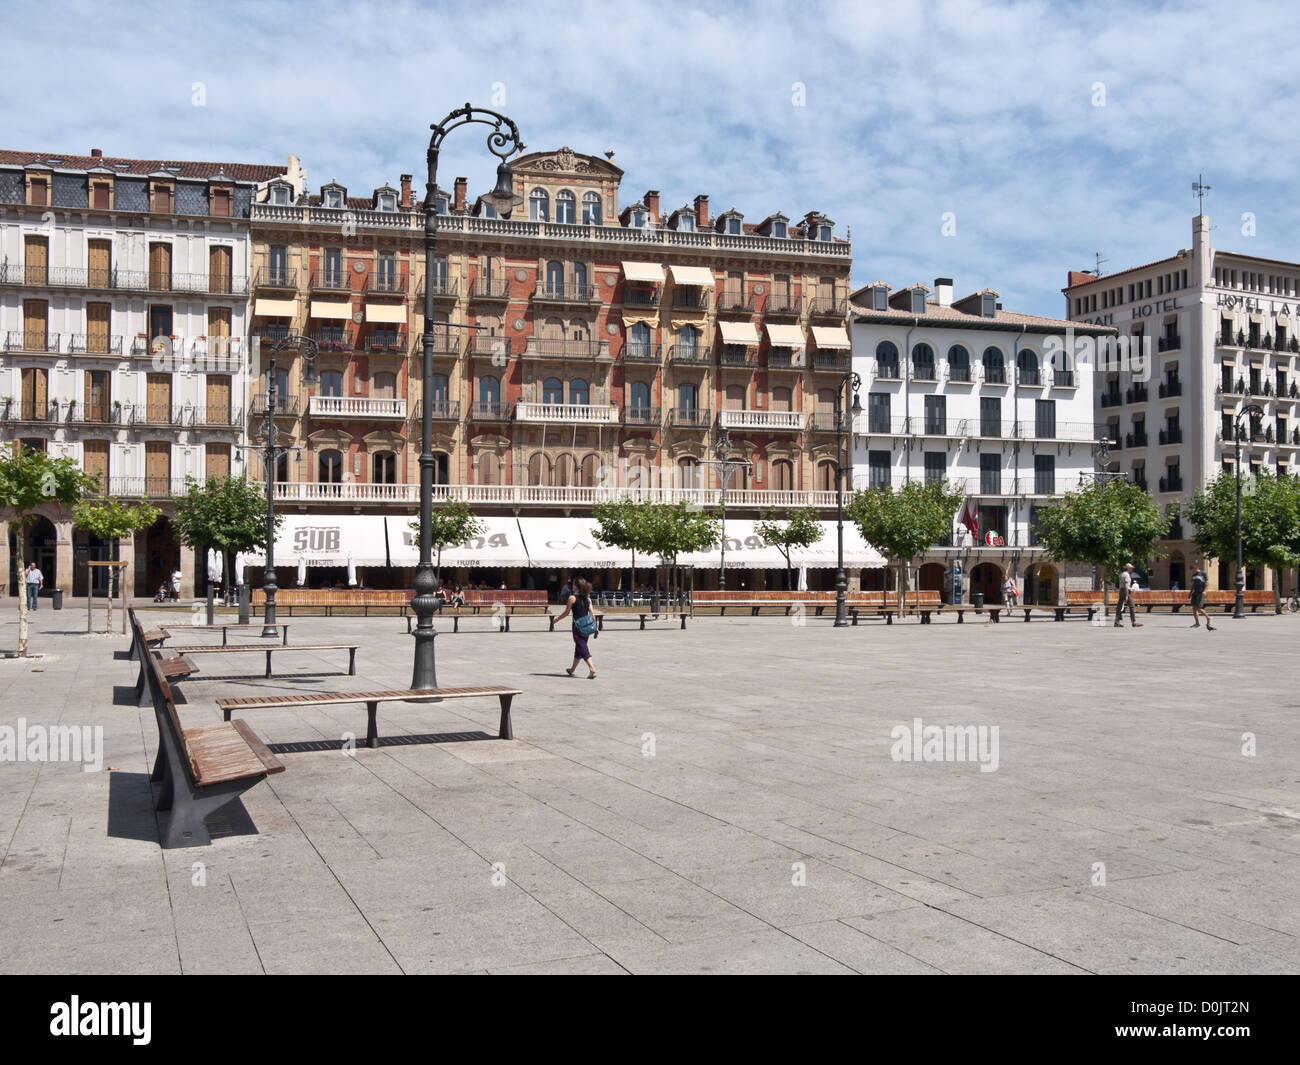 Pamplona, Espagne : Place du Château est le cœur et l'âme de la ville. Le célèbre Café iruña en arrière-plan. Banque D'Images